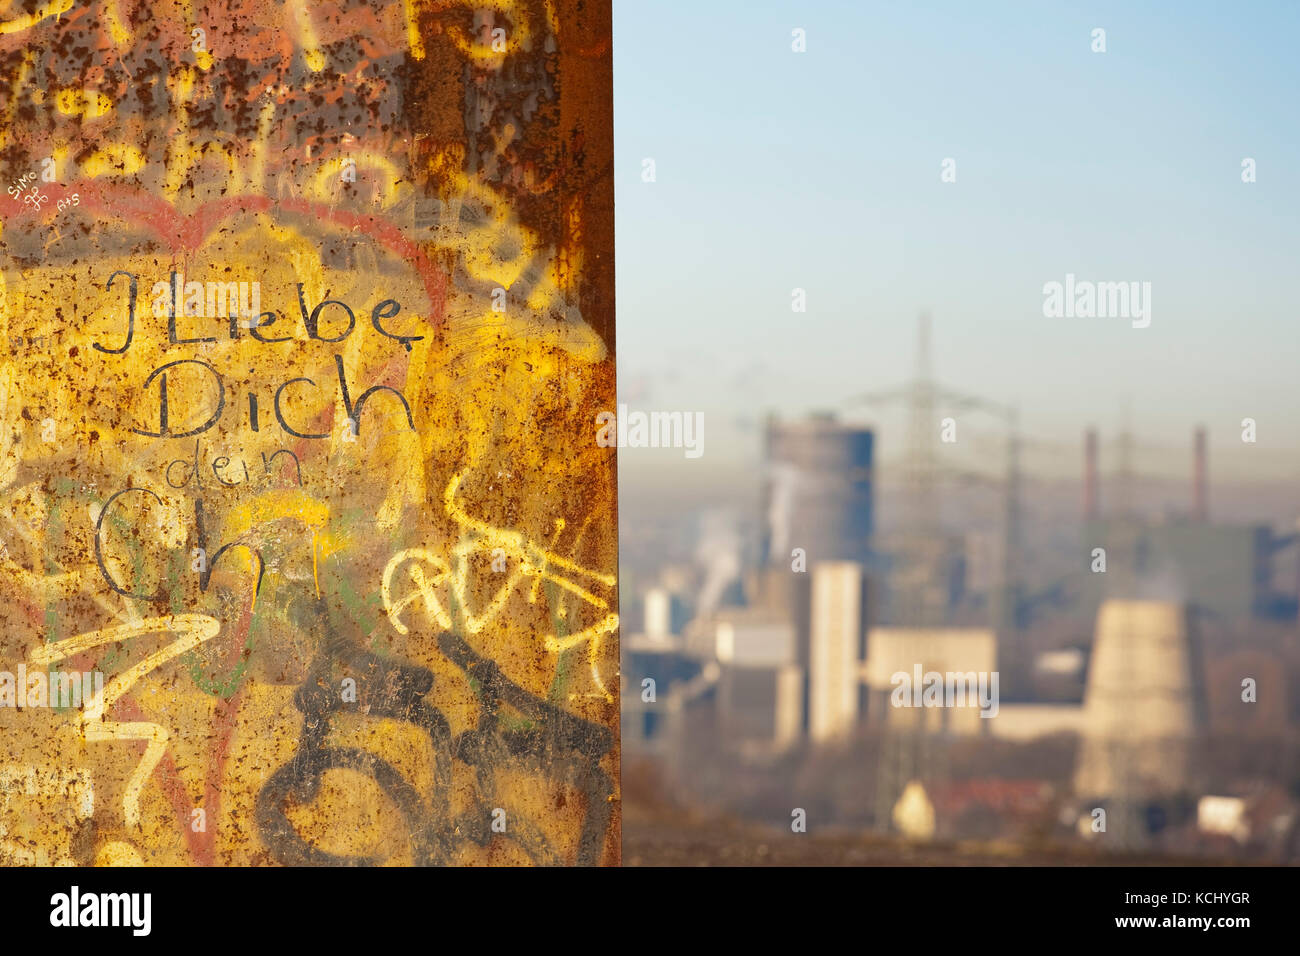 Allemagne, région de Ruhr, Essen, graffiti sur la dalle d'acier par Richard Serra sur le tas de Schurenbach, en arrière-plan la fosse Prosper-Haniel à Bottrop. Banque D'Images